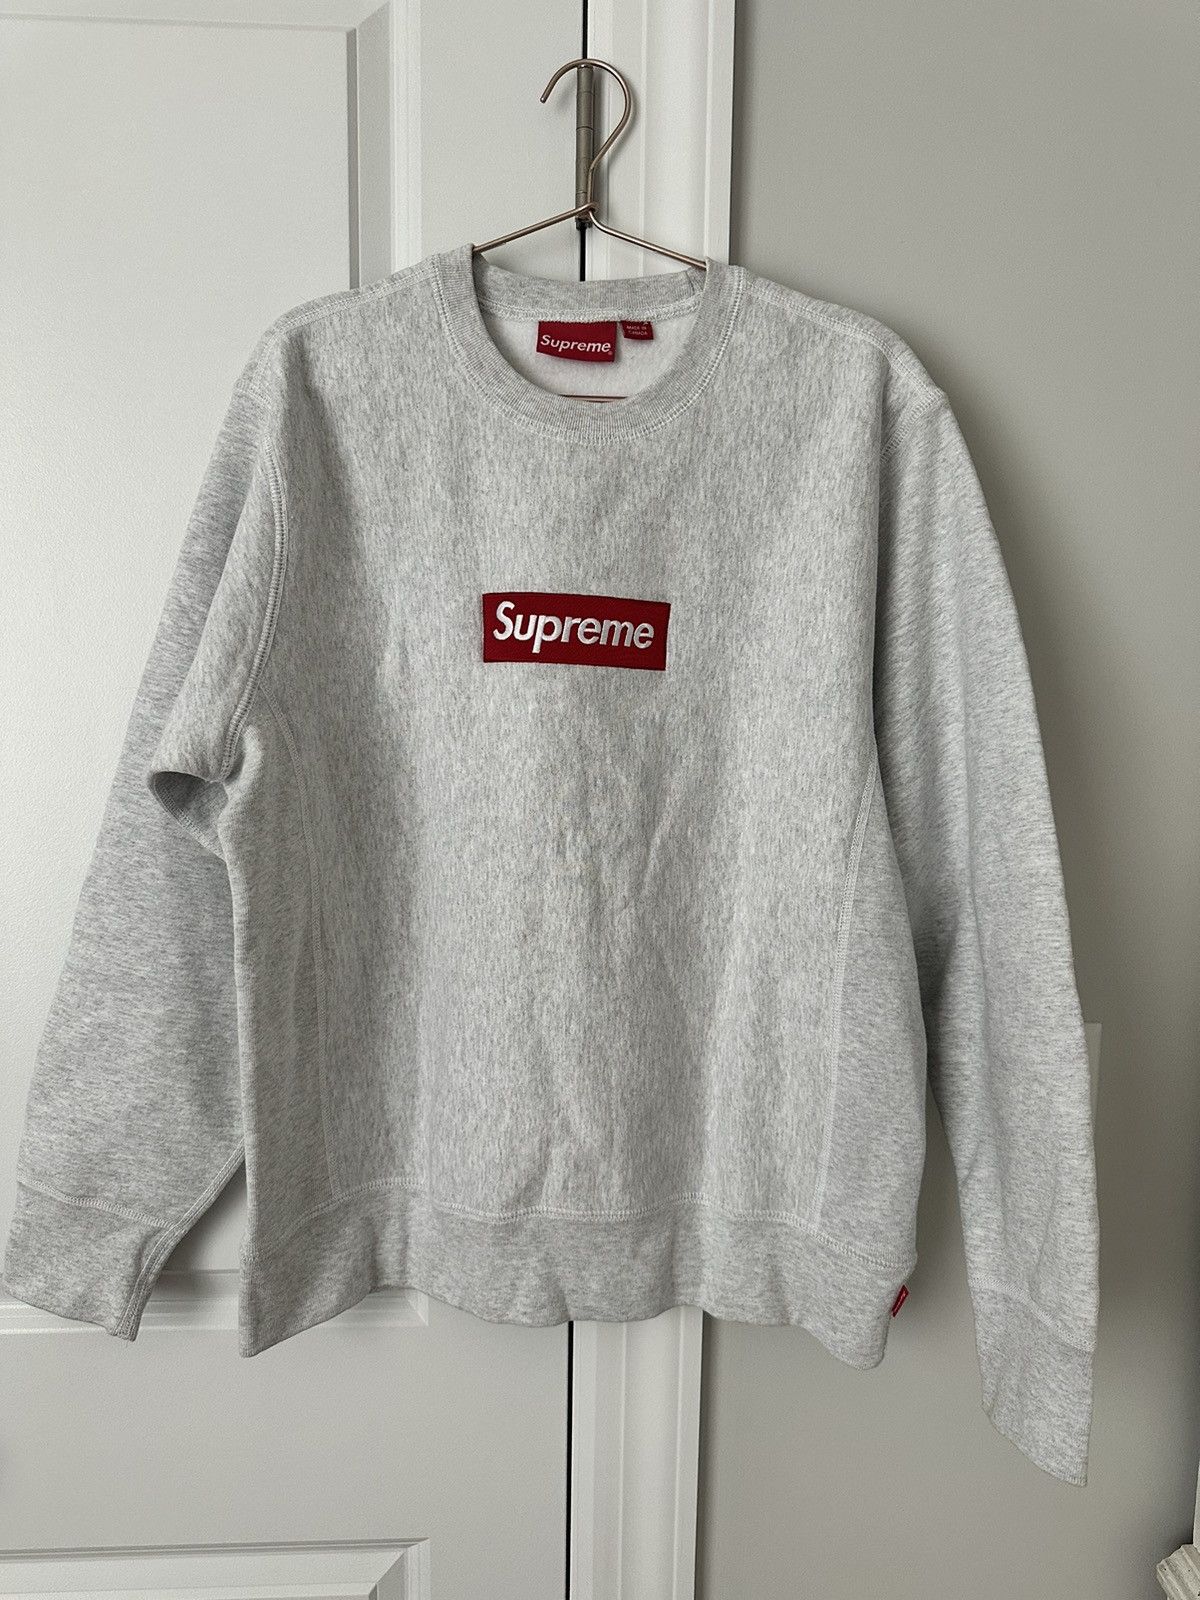 Supreme Supreme crewneck sweater | Grailed